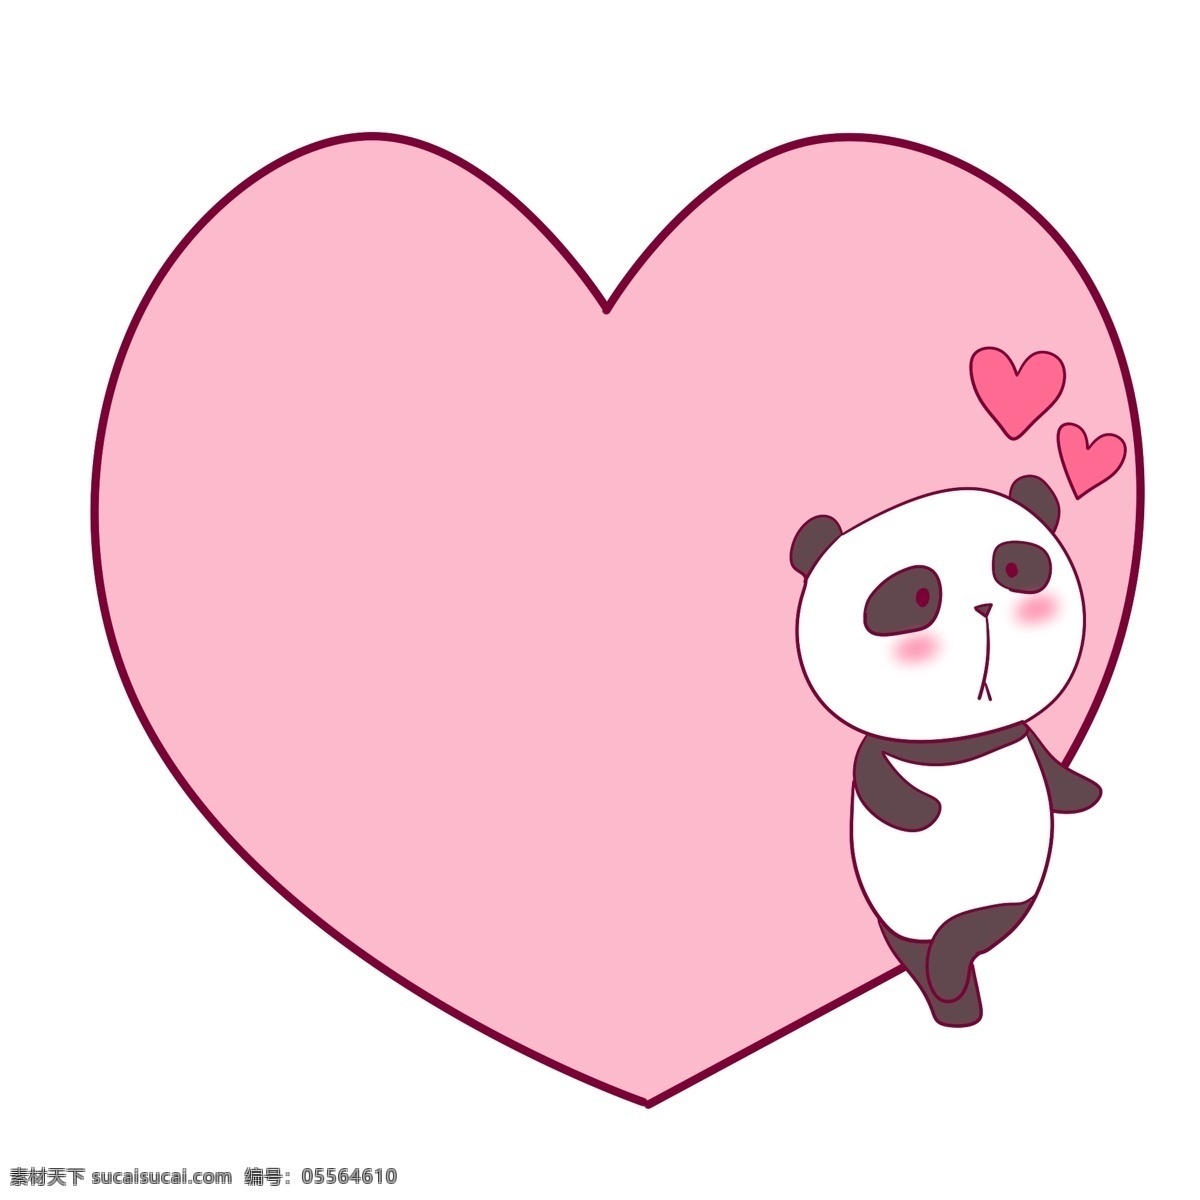 大熊猫 粉色 心形 边框 大熊猫边框 粉色边框 心形边框 可爱的大熊猫 卡通边框 可爱的边框 边框插画 小动物边框